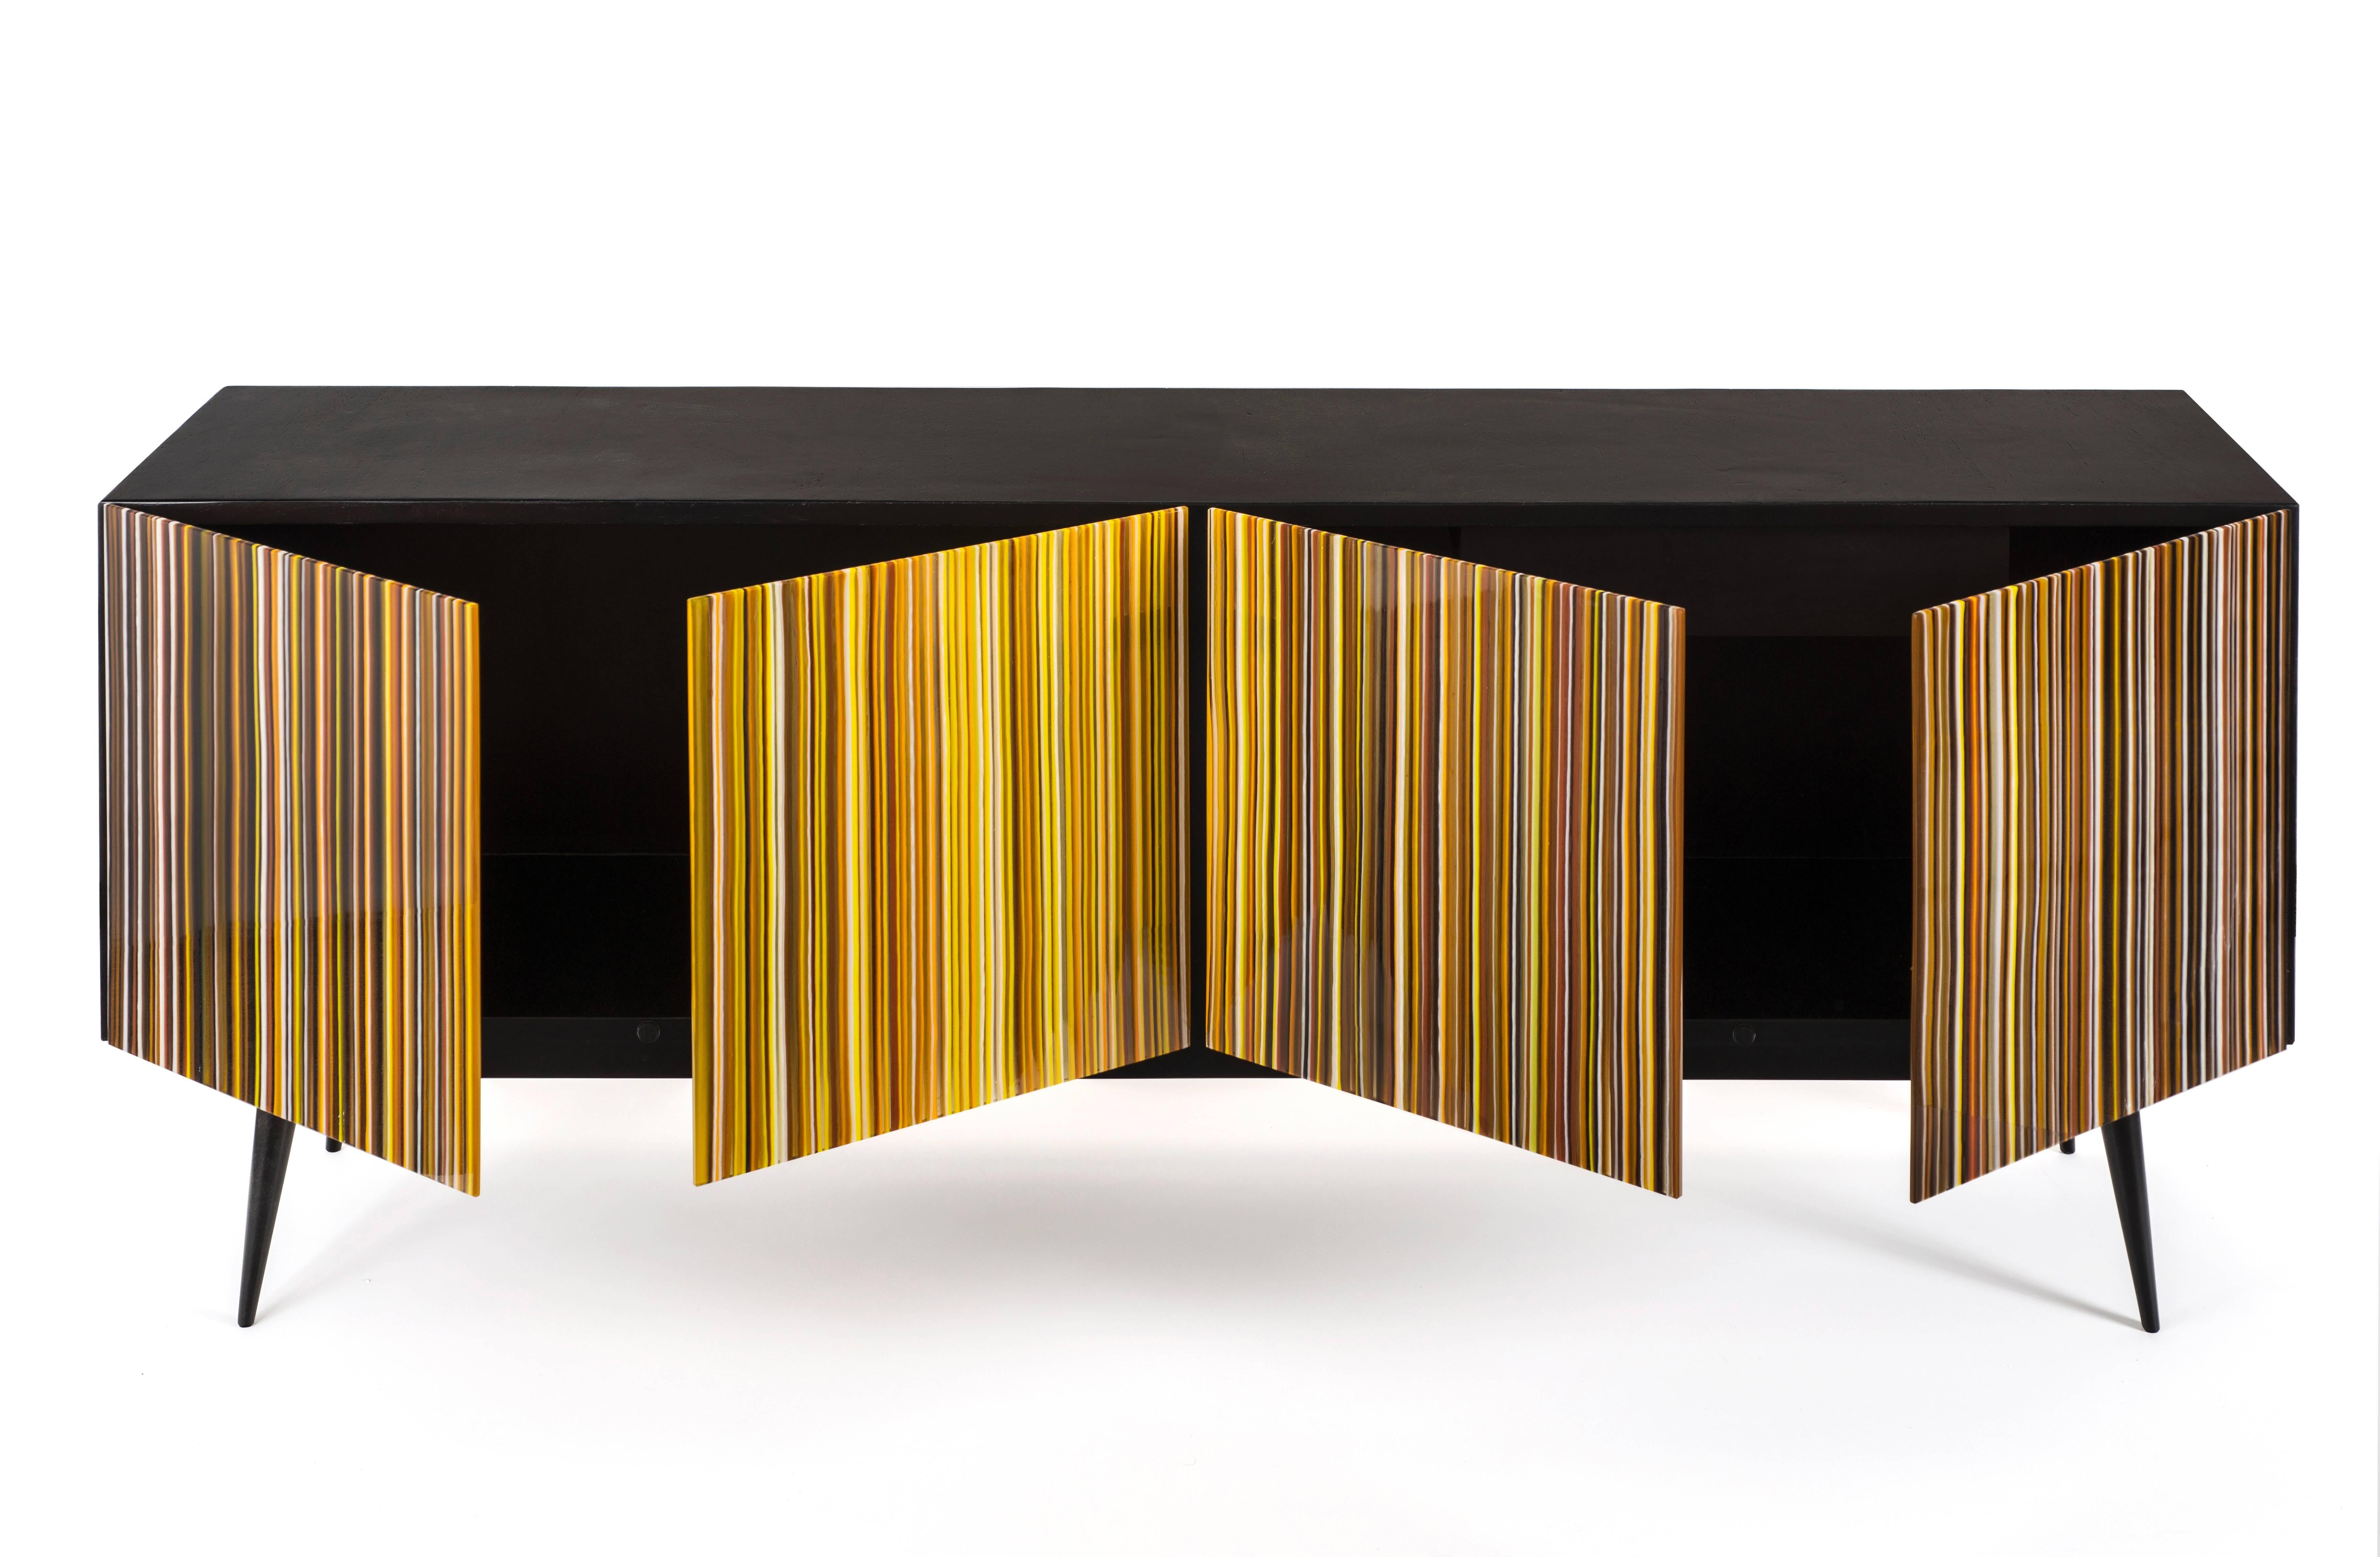 Die Buff-Heyyy ist eine Kredenz im Retrostil, die von Orfeo Quagliata in Collaboration mit Taracea Furniture entworfen wurde. Ein Objekt aus geschmolzenem Glas, das mit der exklusiven Barcode-Technik hergestellt wurde. Das Retro-Design von